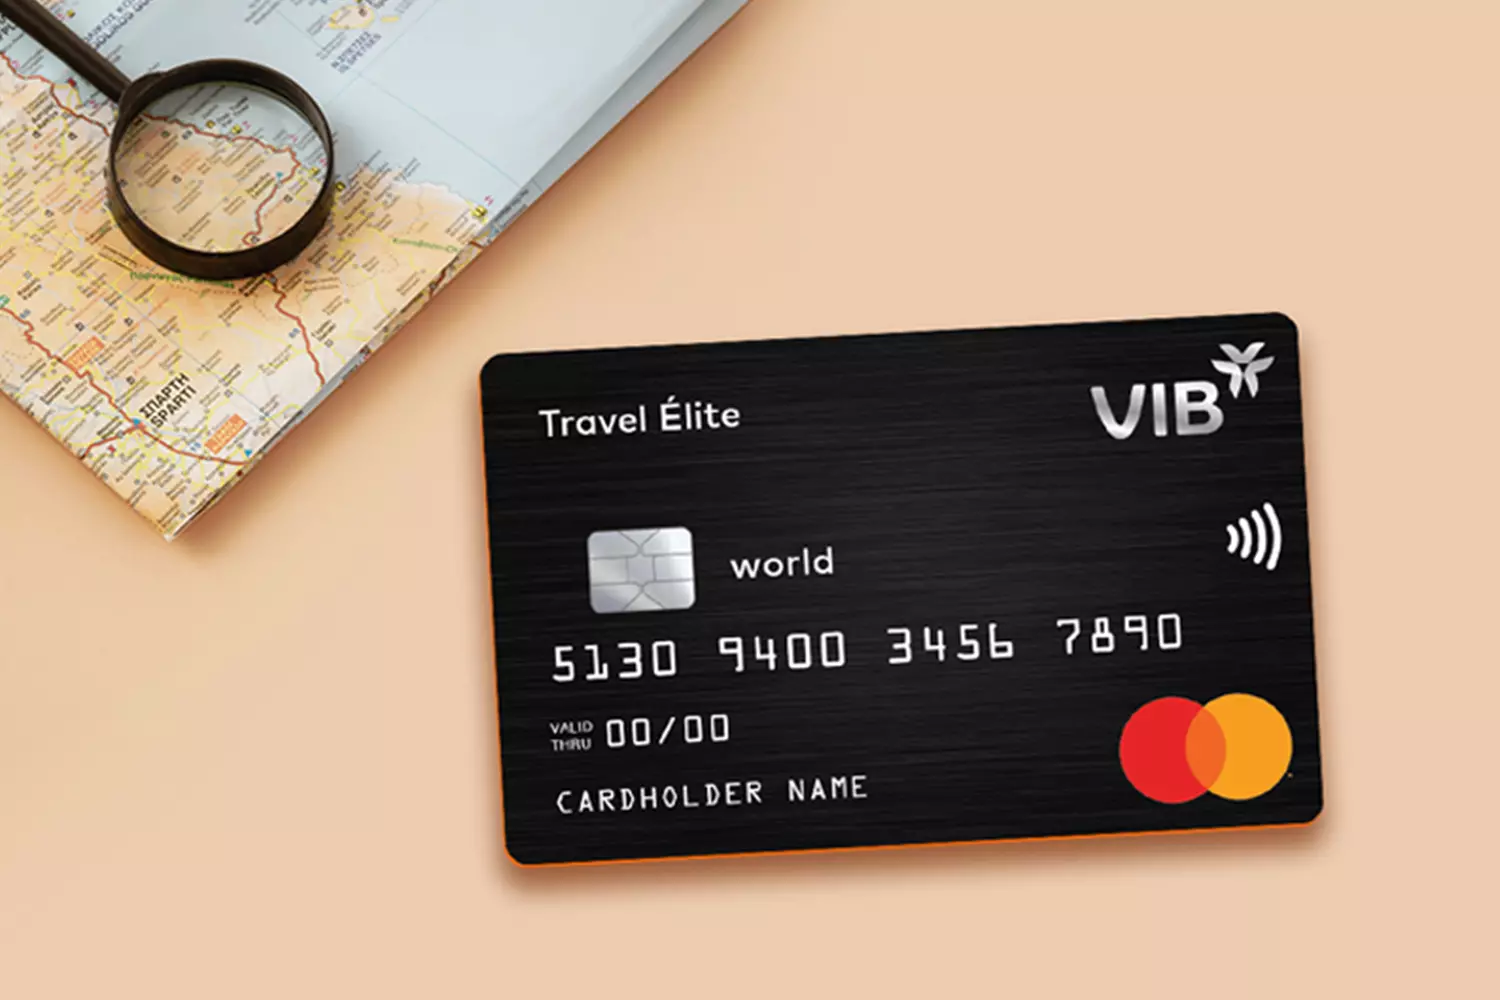 Thẻ tín dụng dành cho du lịch VIB Travel Élite mang đến nhiều ưu đãi hấp dẫn